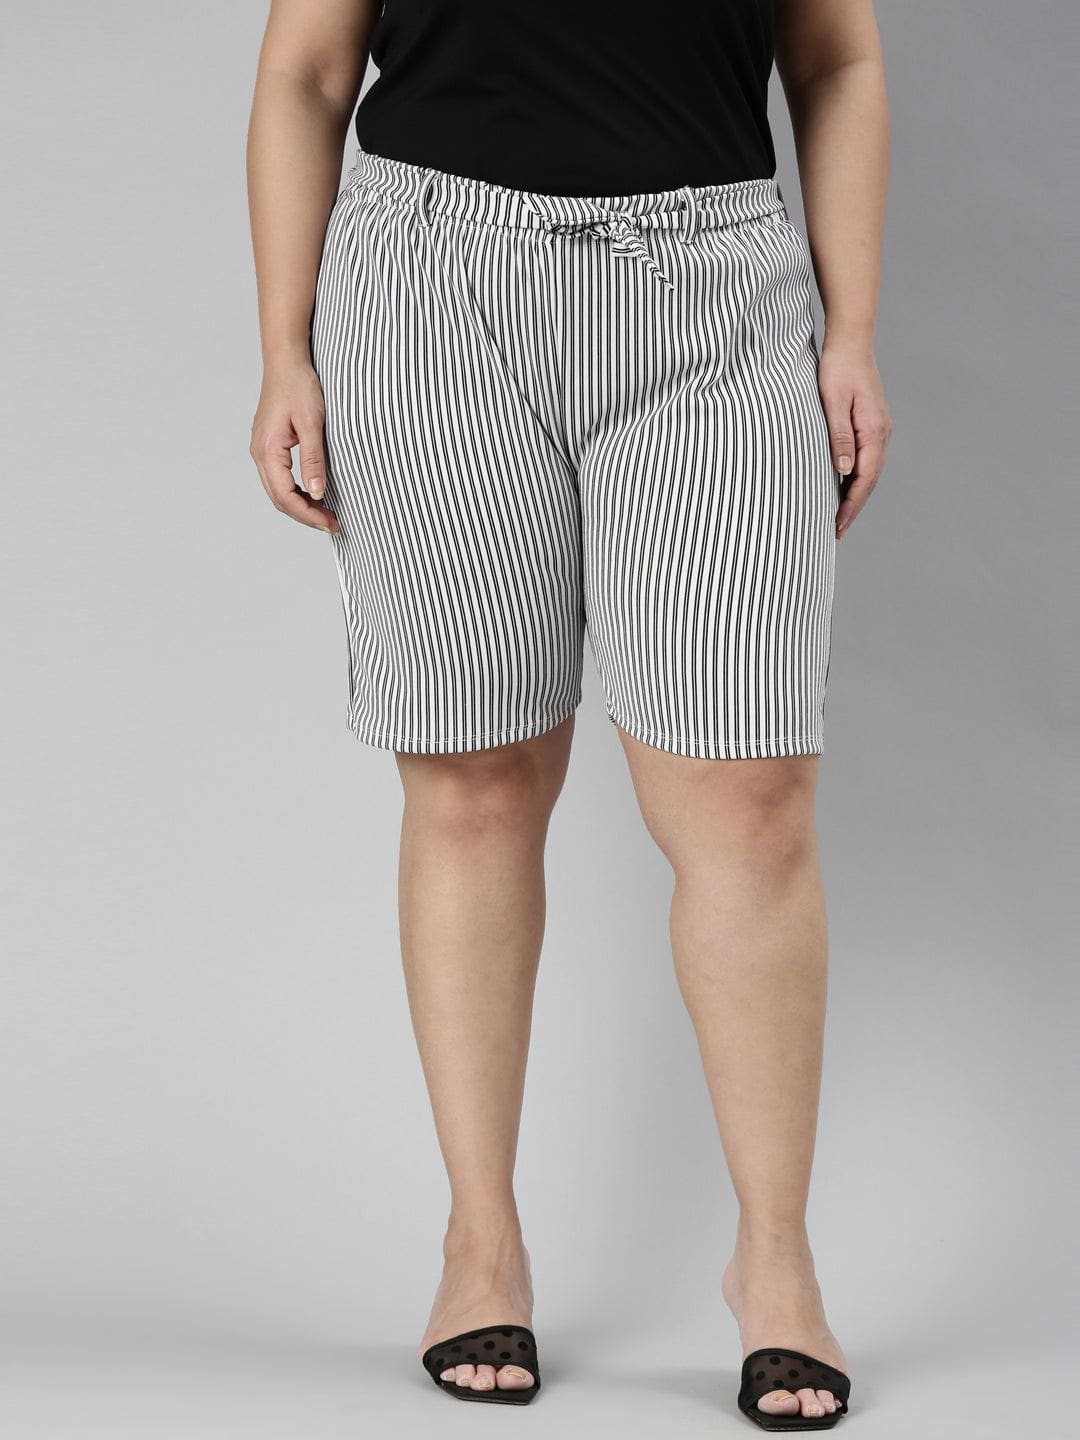 TheShaili - Women's Regular fit  Black & White shorts